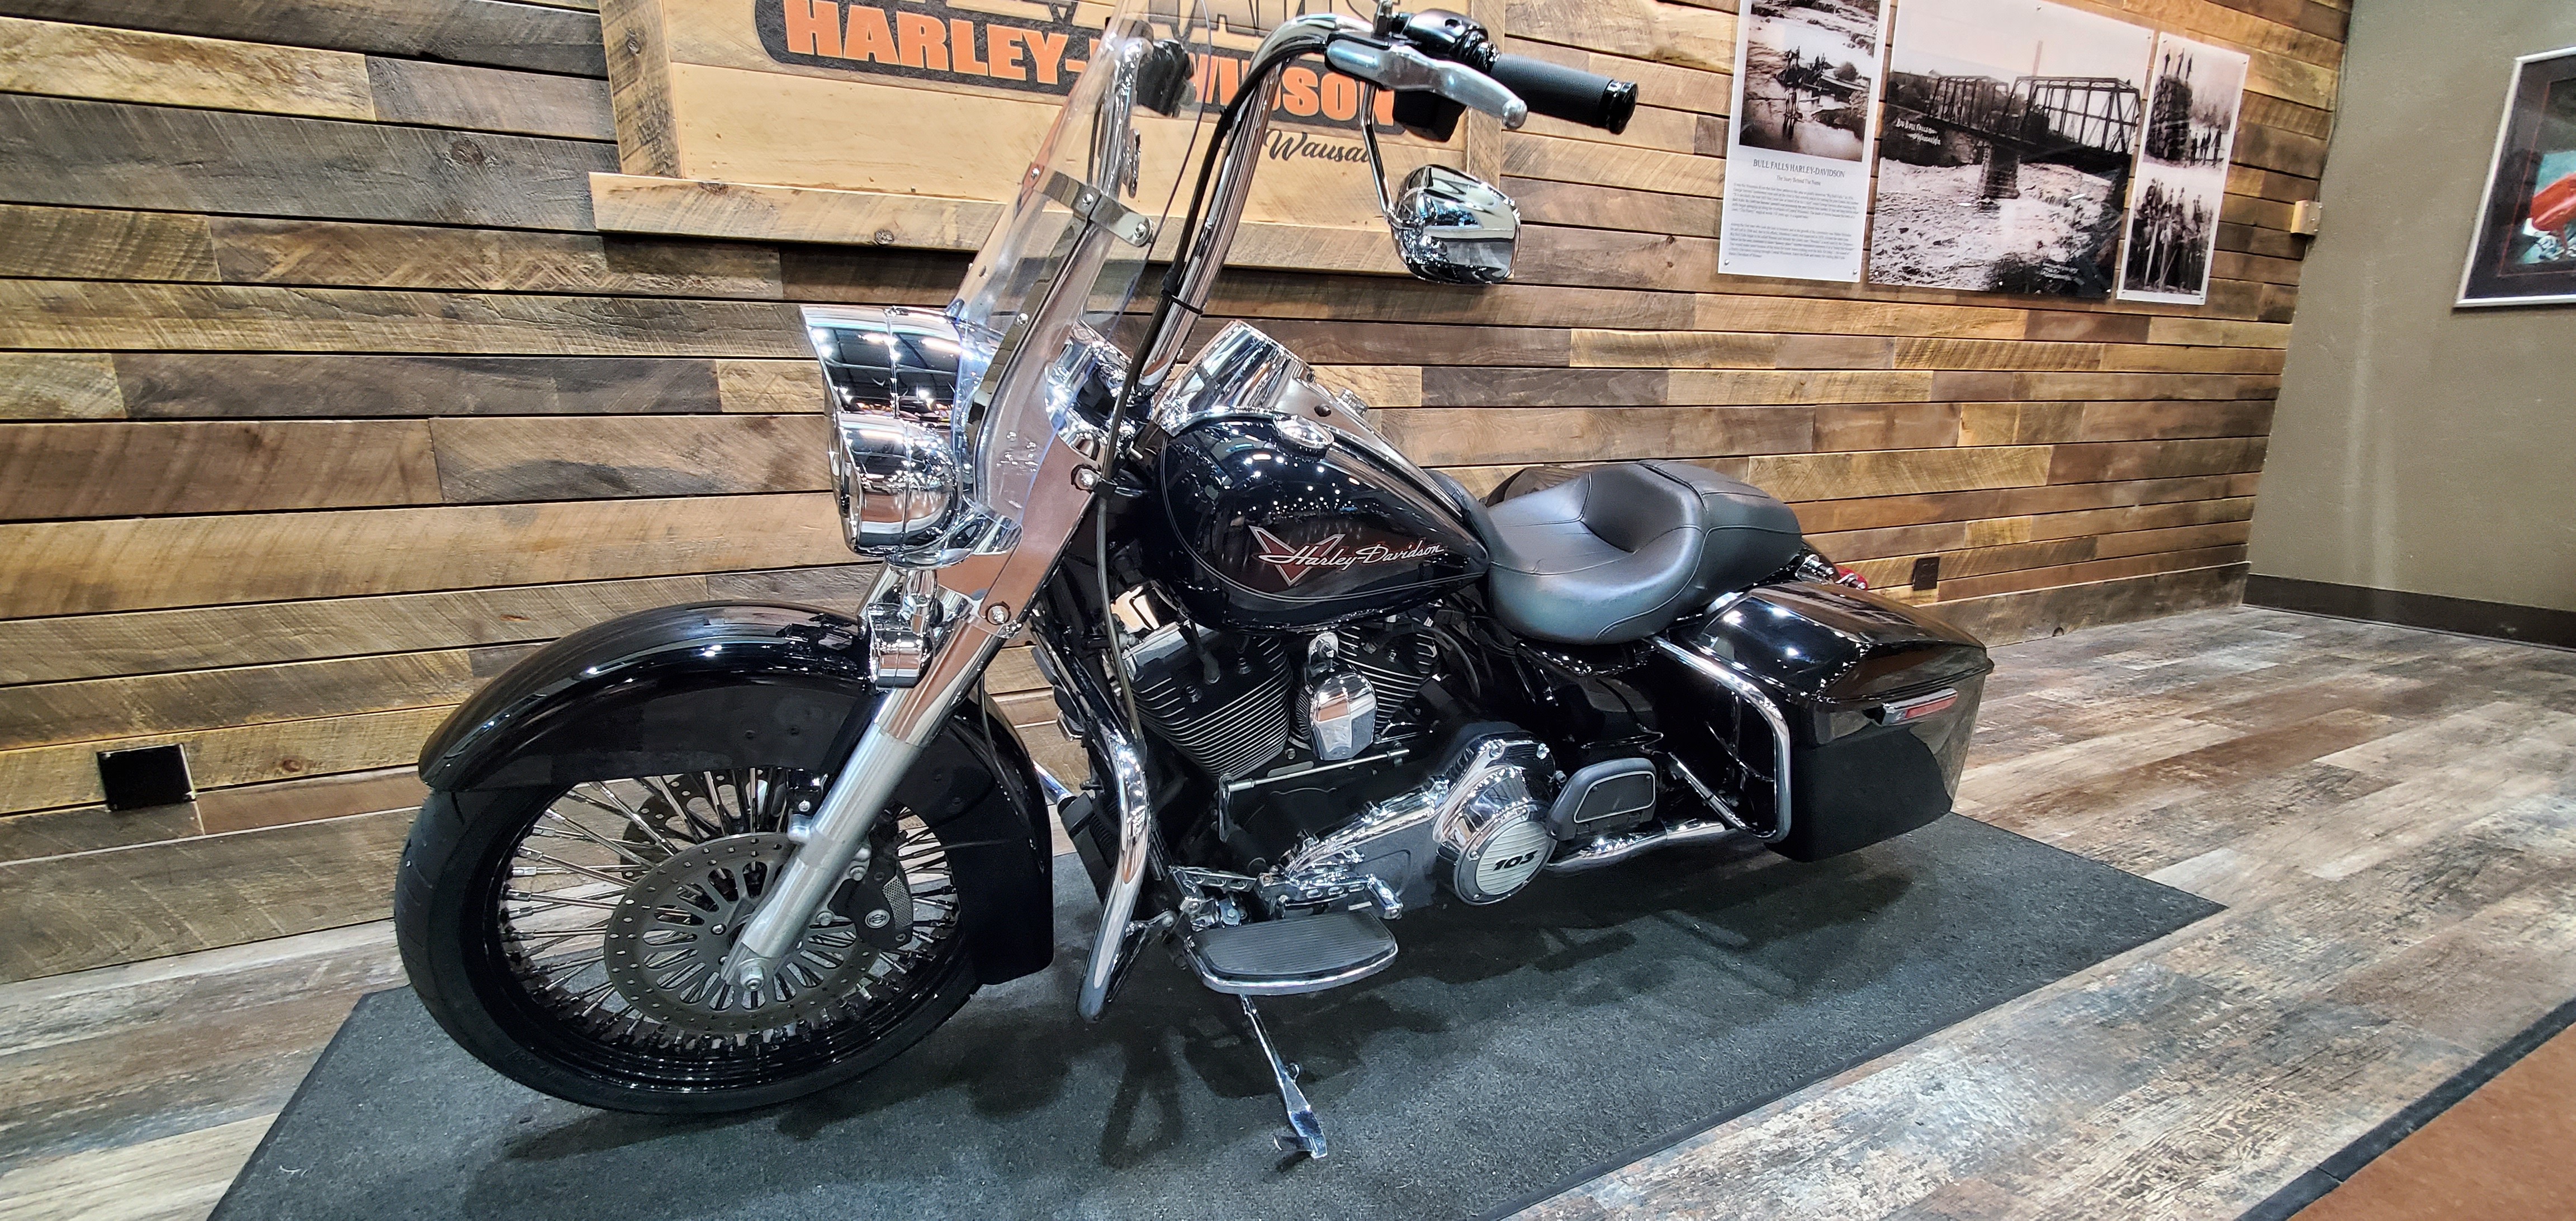 2012 Harley-Davidson Road King Base at Bull Falls Harley-Davidson